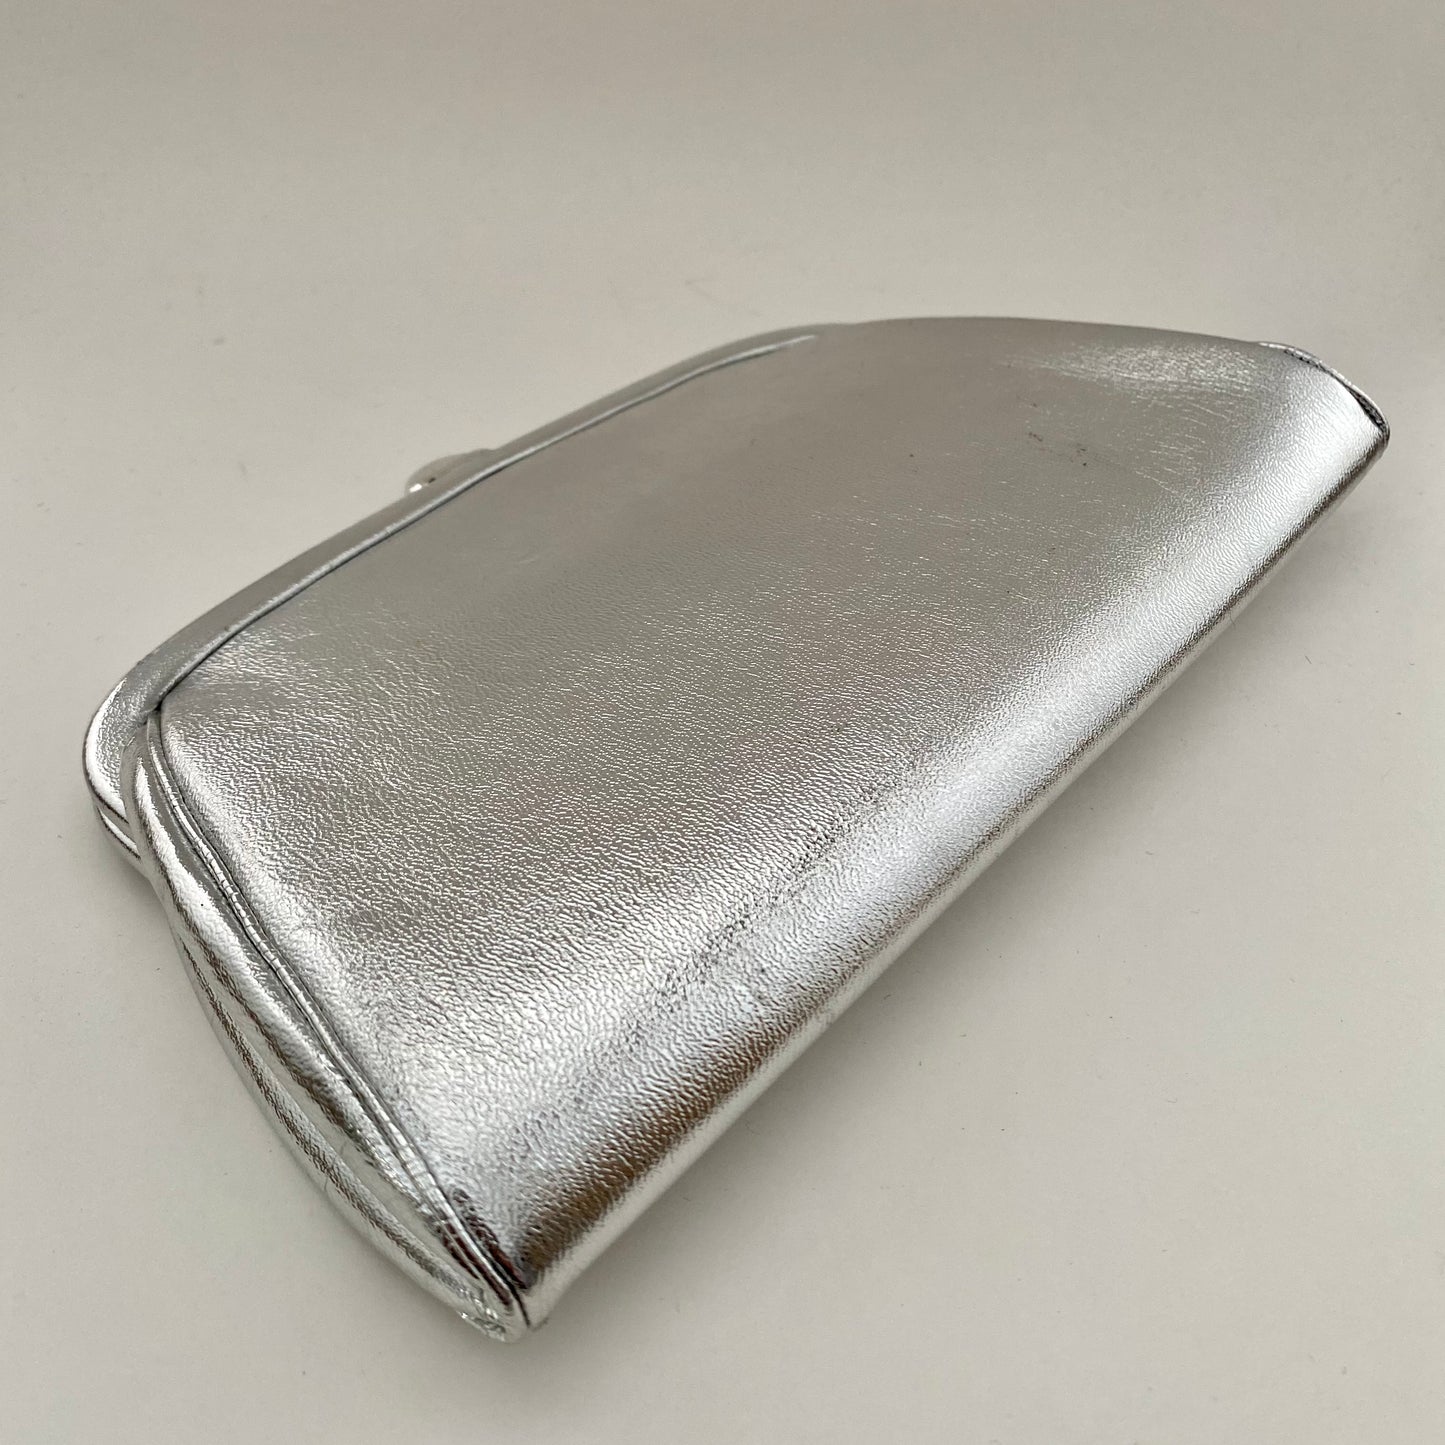 1960s Silver Clutch Handbag